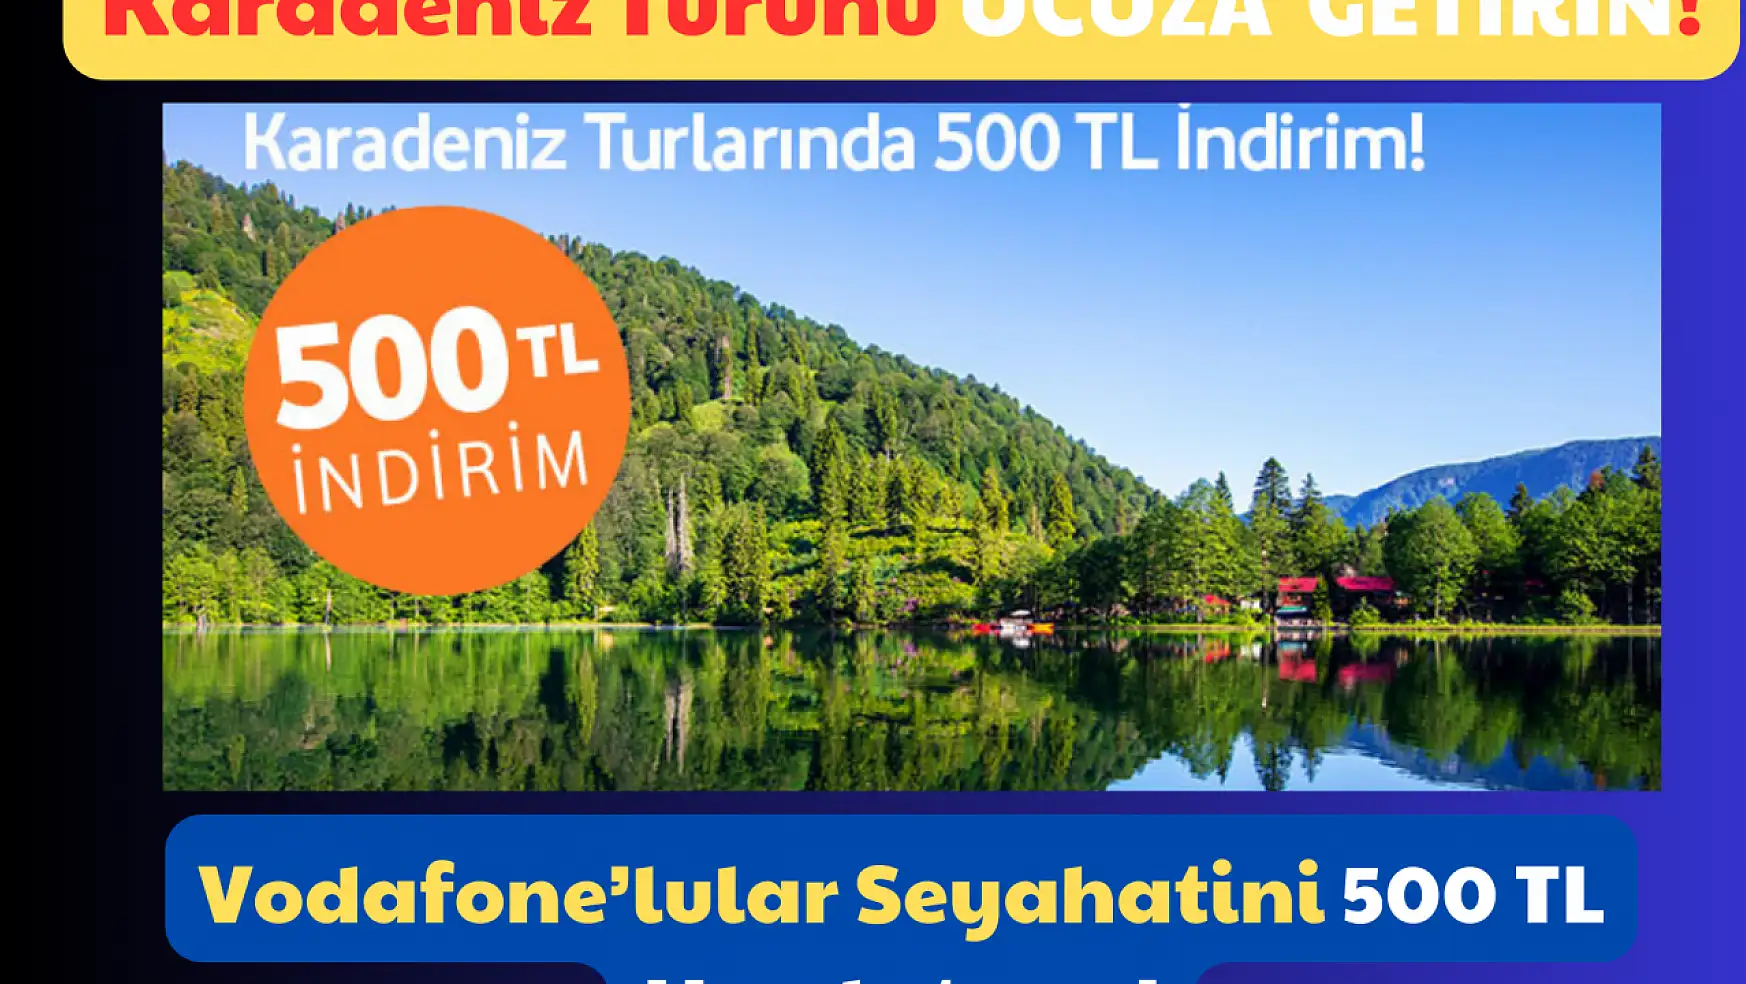 Karadeniz Turunu Ucuza Getirin: Vodafone'lular Seyahatini 500 TL Ucuzlatıyor!